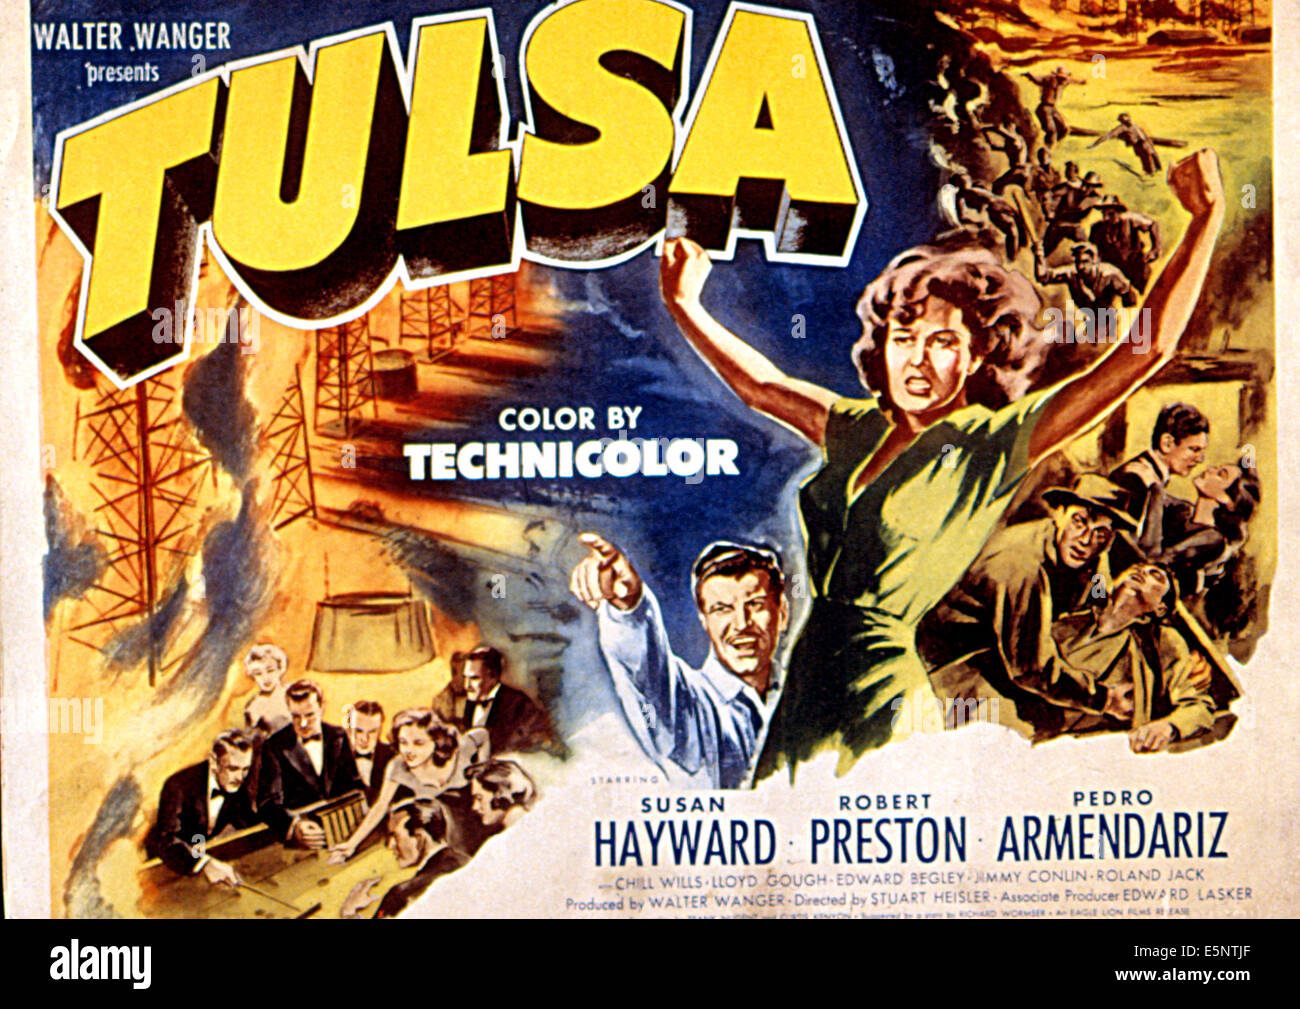 TULSA, Robert Preston, Susan Hayward, 1949 Stockfoto